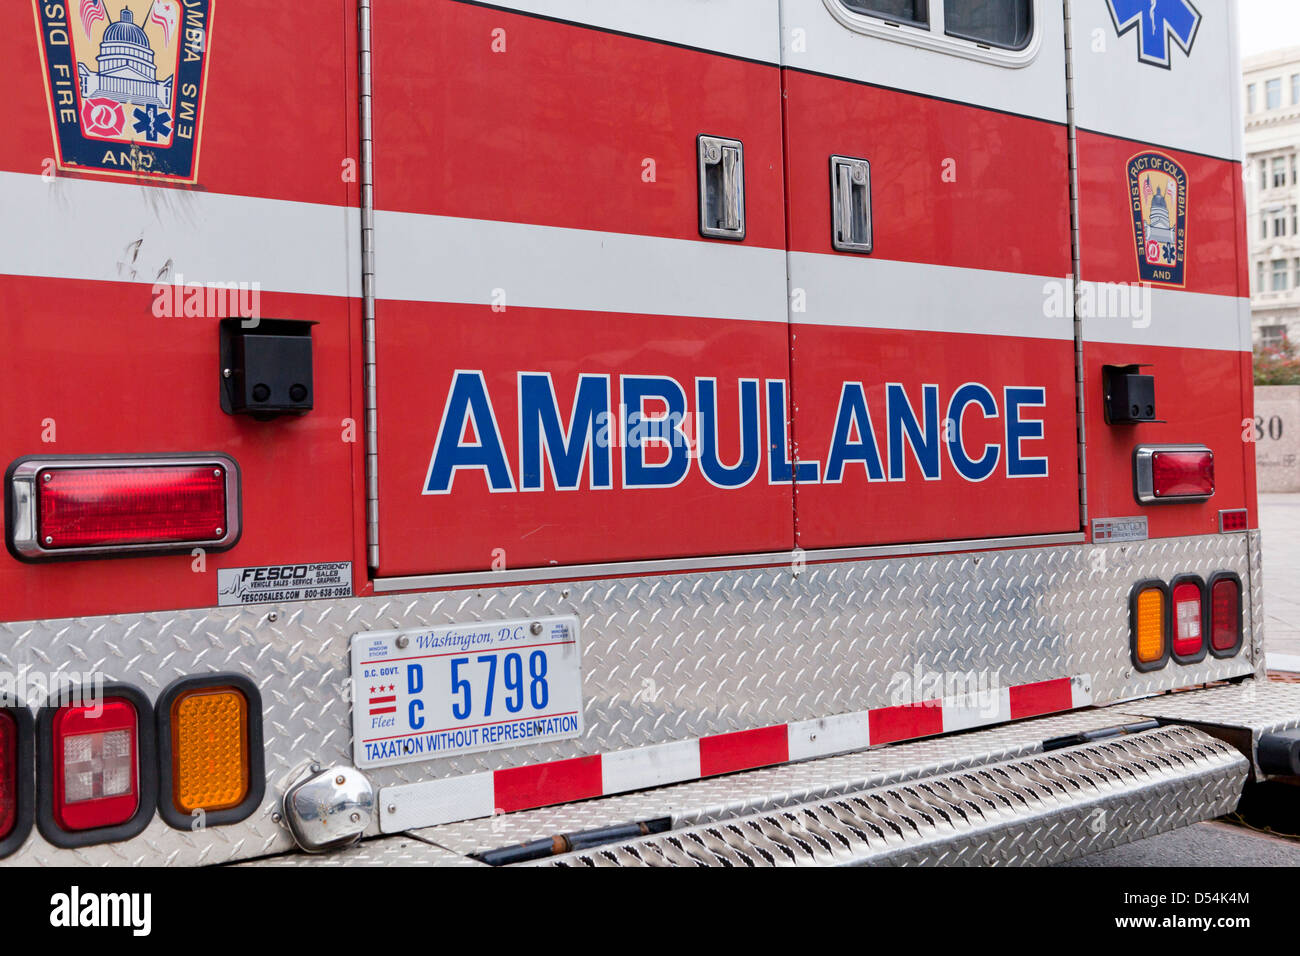 Ambulance rear view Stock Photo